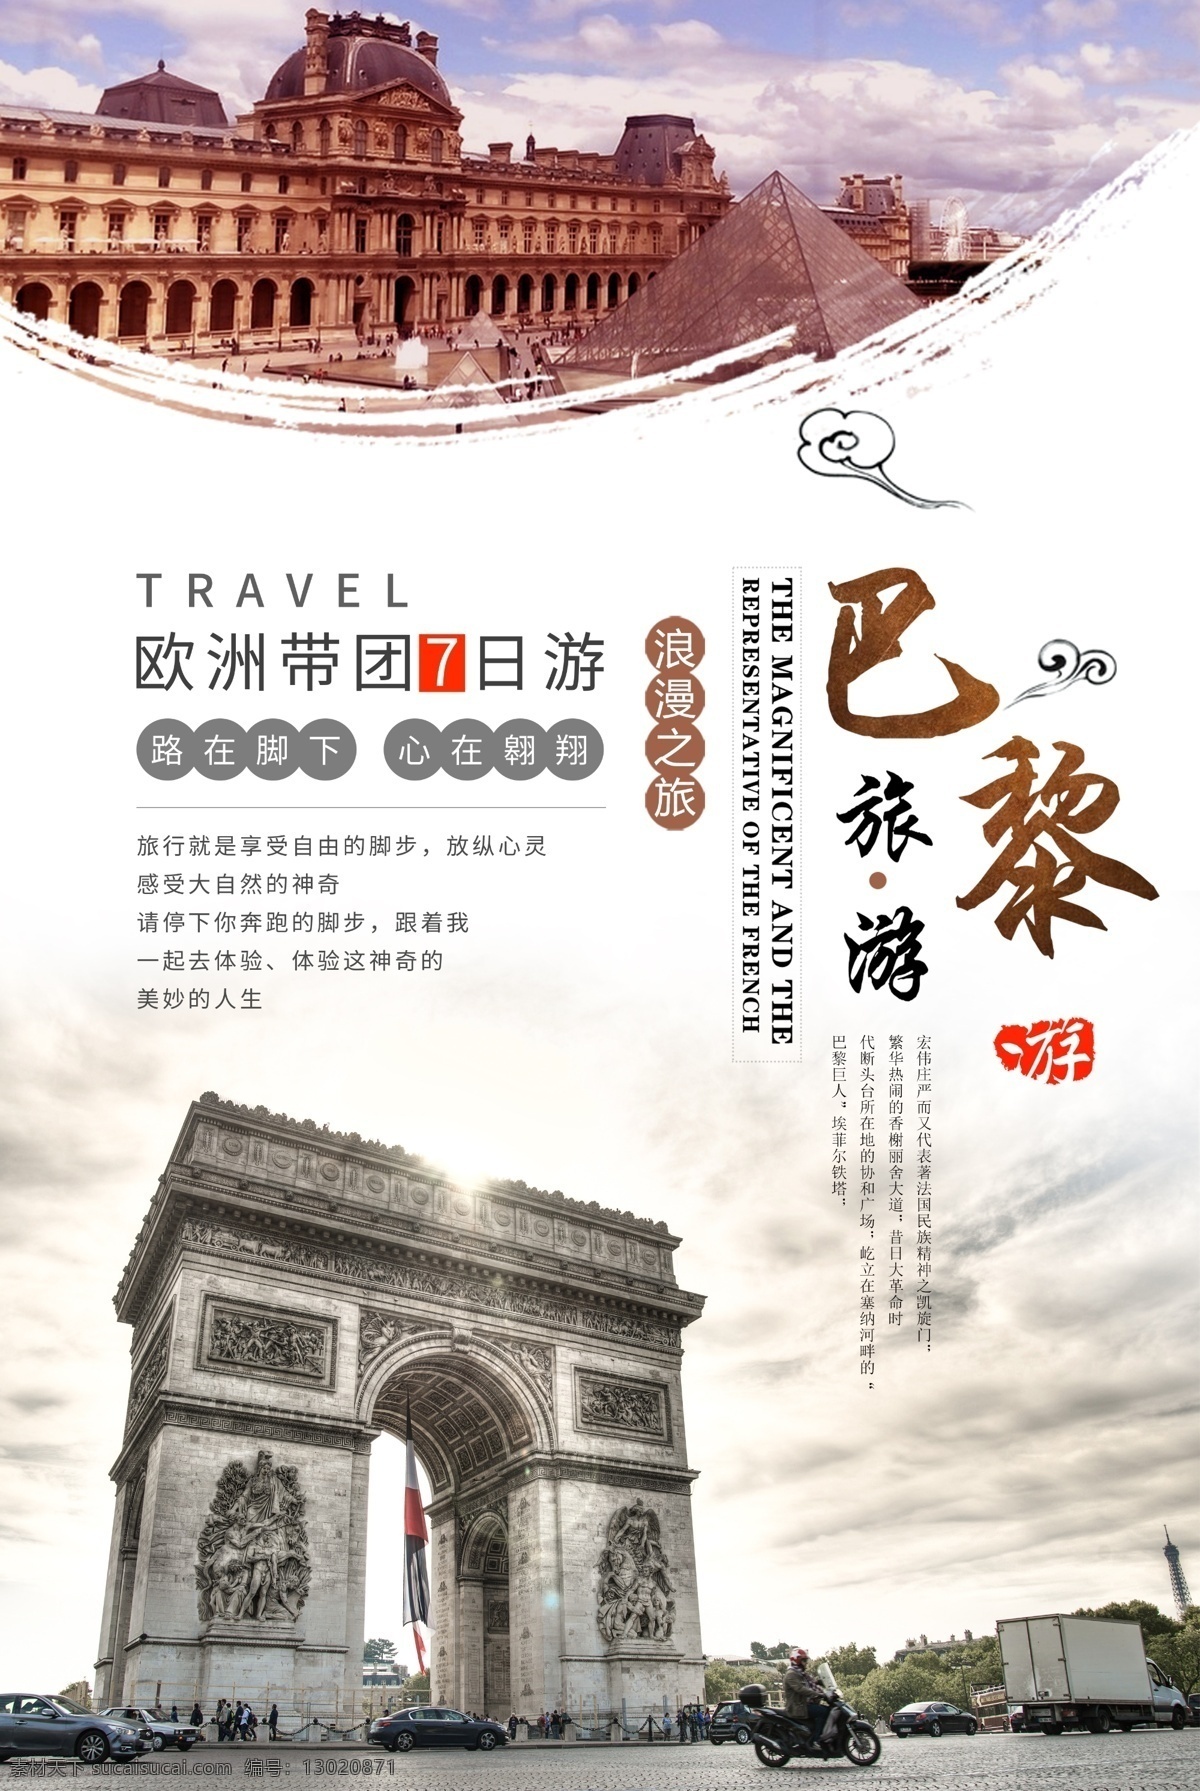 巴黎旅游海报 巴黎印象 欧洲旅游 旅游海报 出国游 凯旋门 法国巴黎 分层